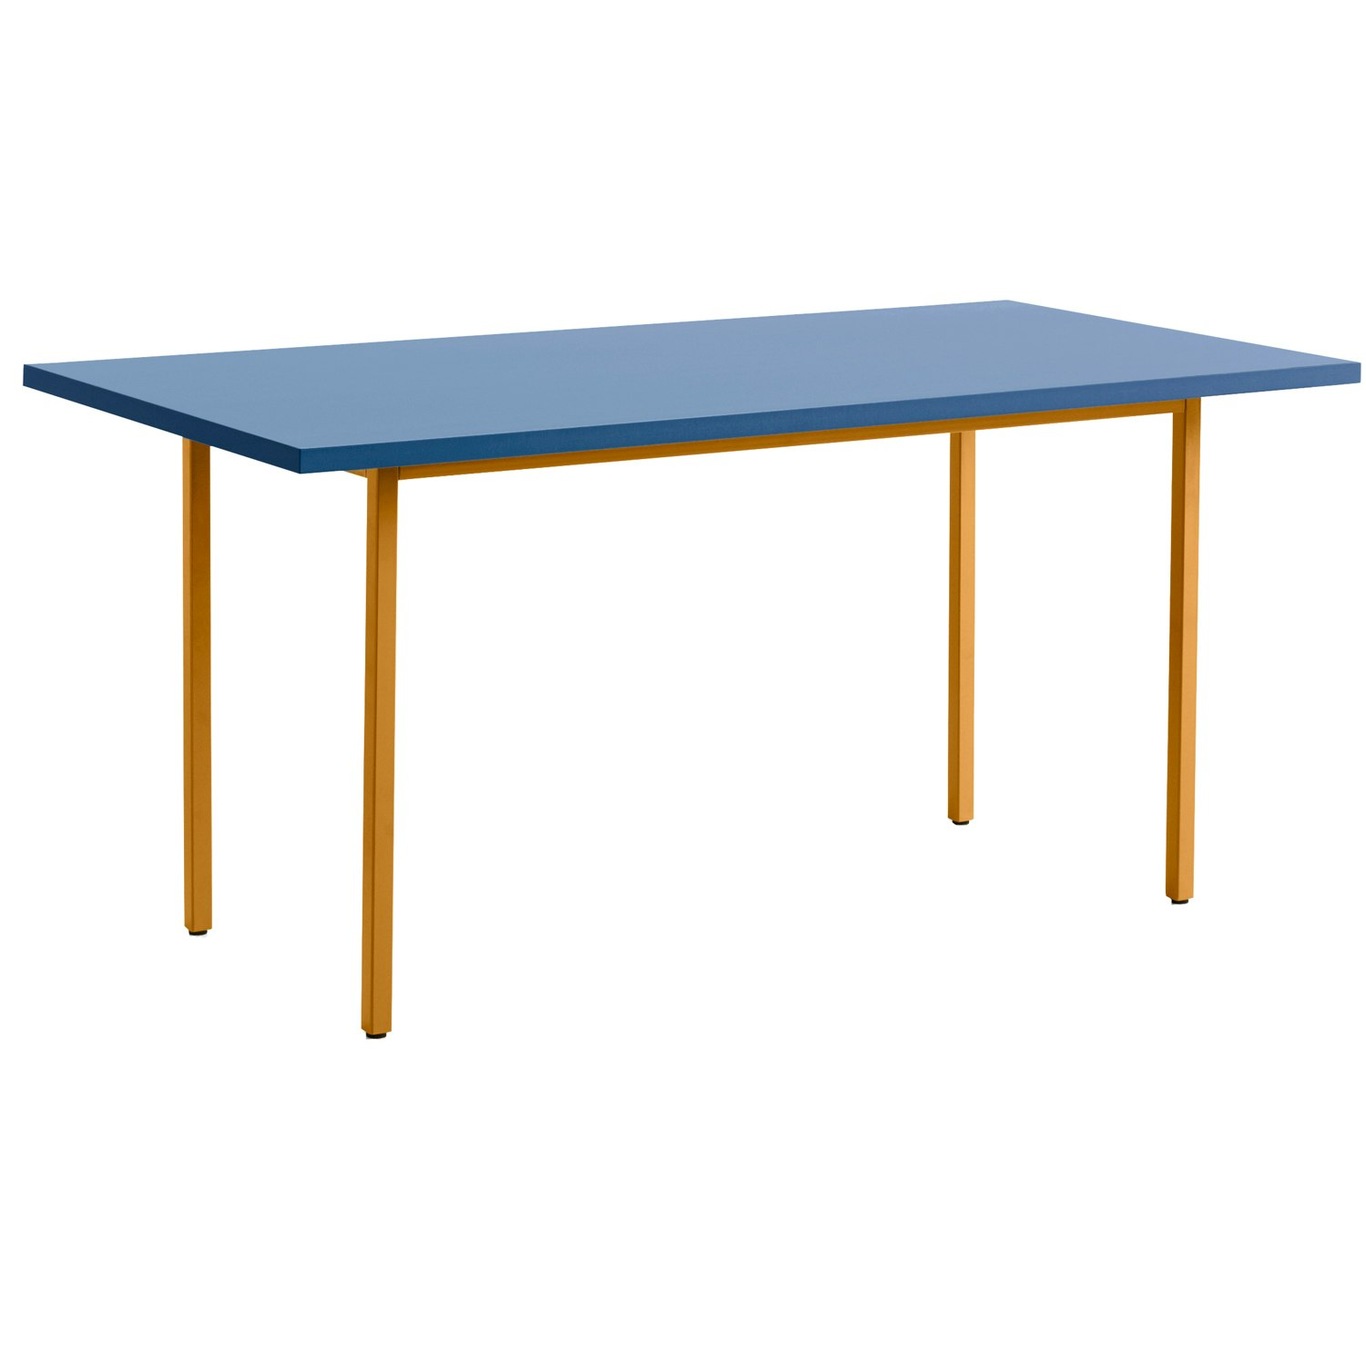 Two-Colour Pöytä 160x82 cm, Ochre / Sininen